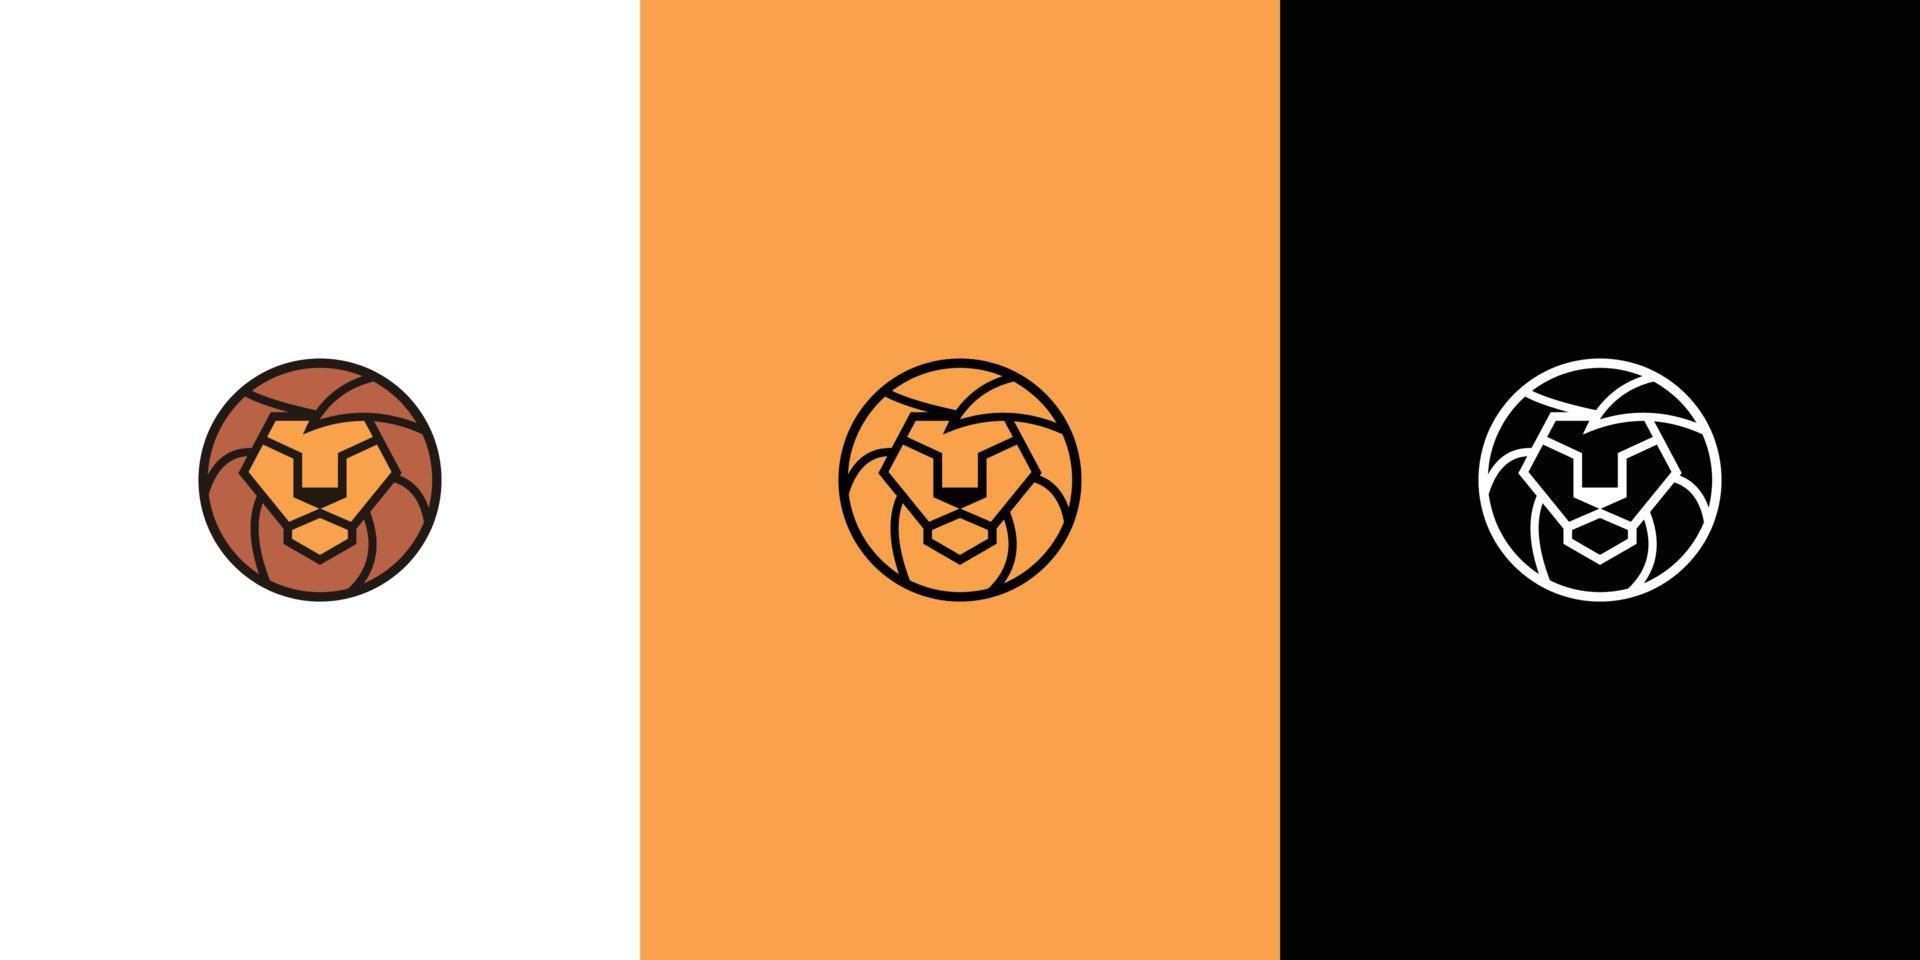 leeuw logo, voor uw bedrijf, symbolen naar overbrengen idee van sterkte macht trots eer bewaker veiligheid erfgoed en tradities. vector